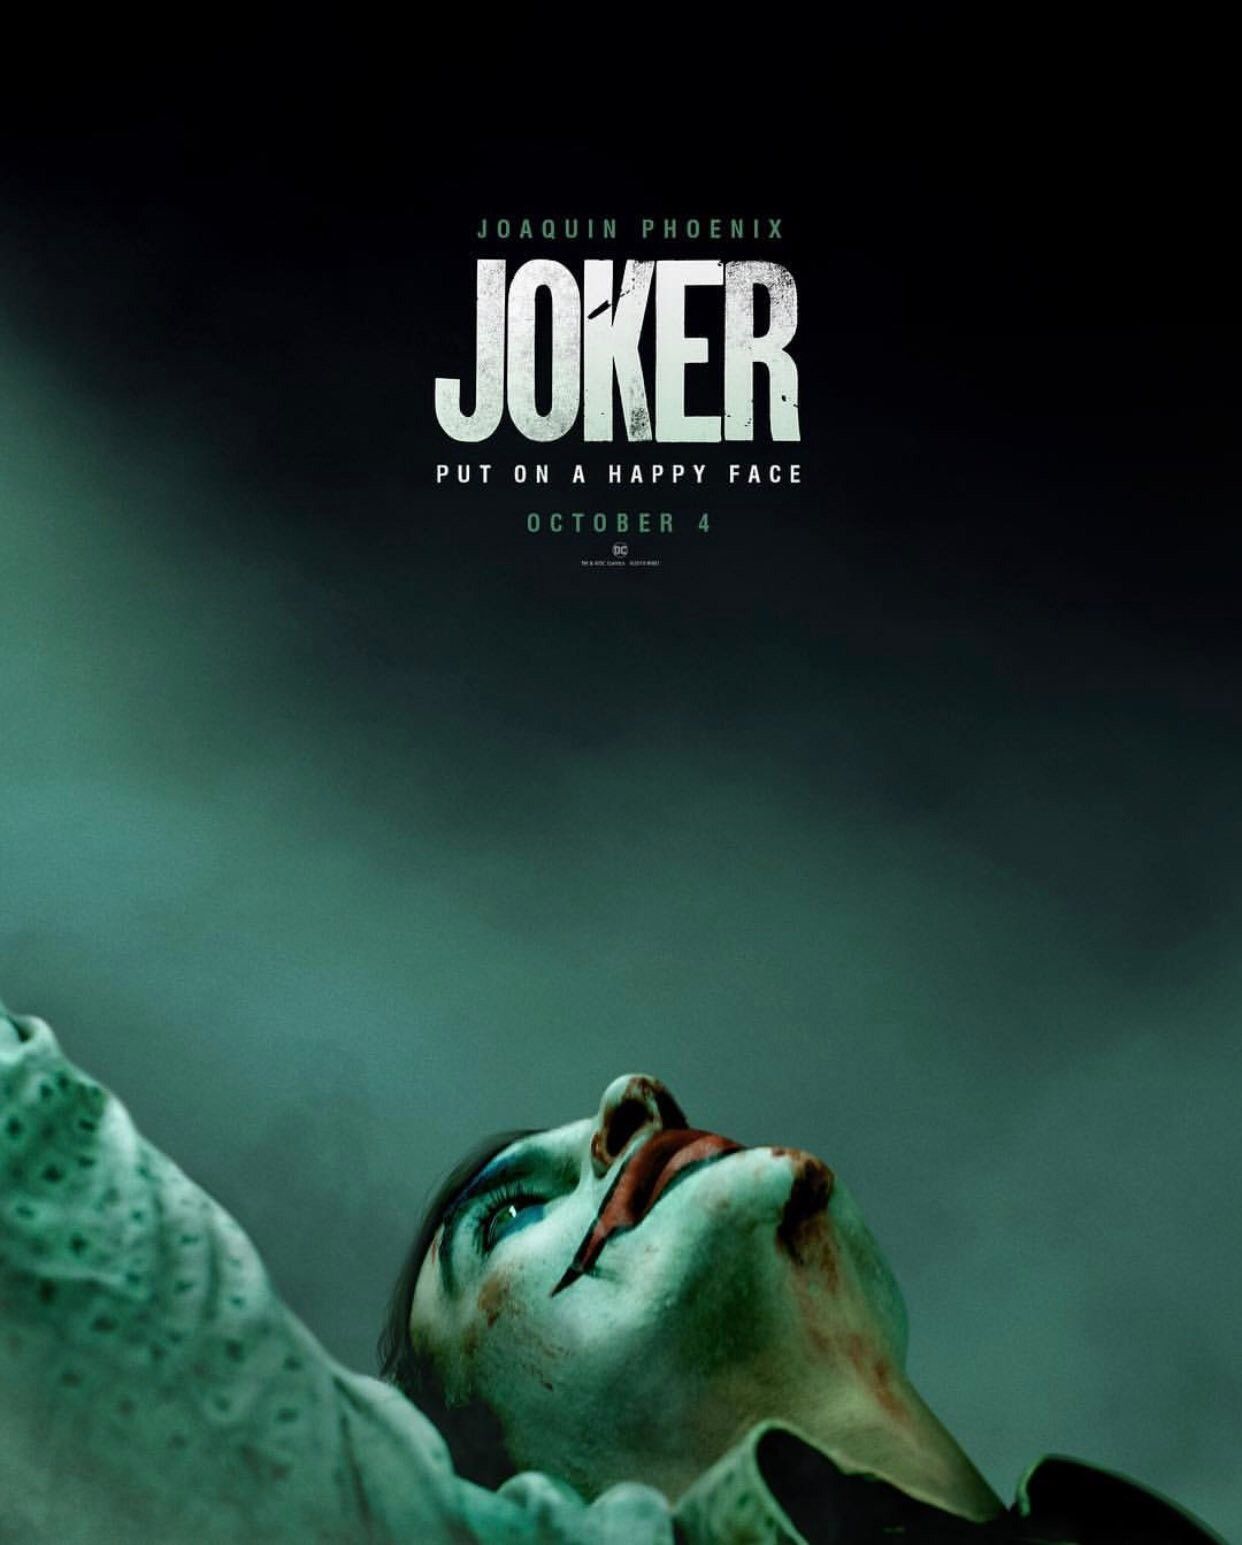 Joaquin Phoenix Walking Off Joker Set Video Awkwardly Released